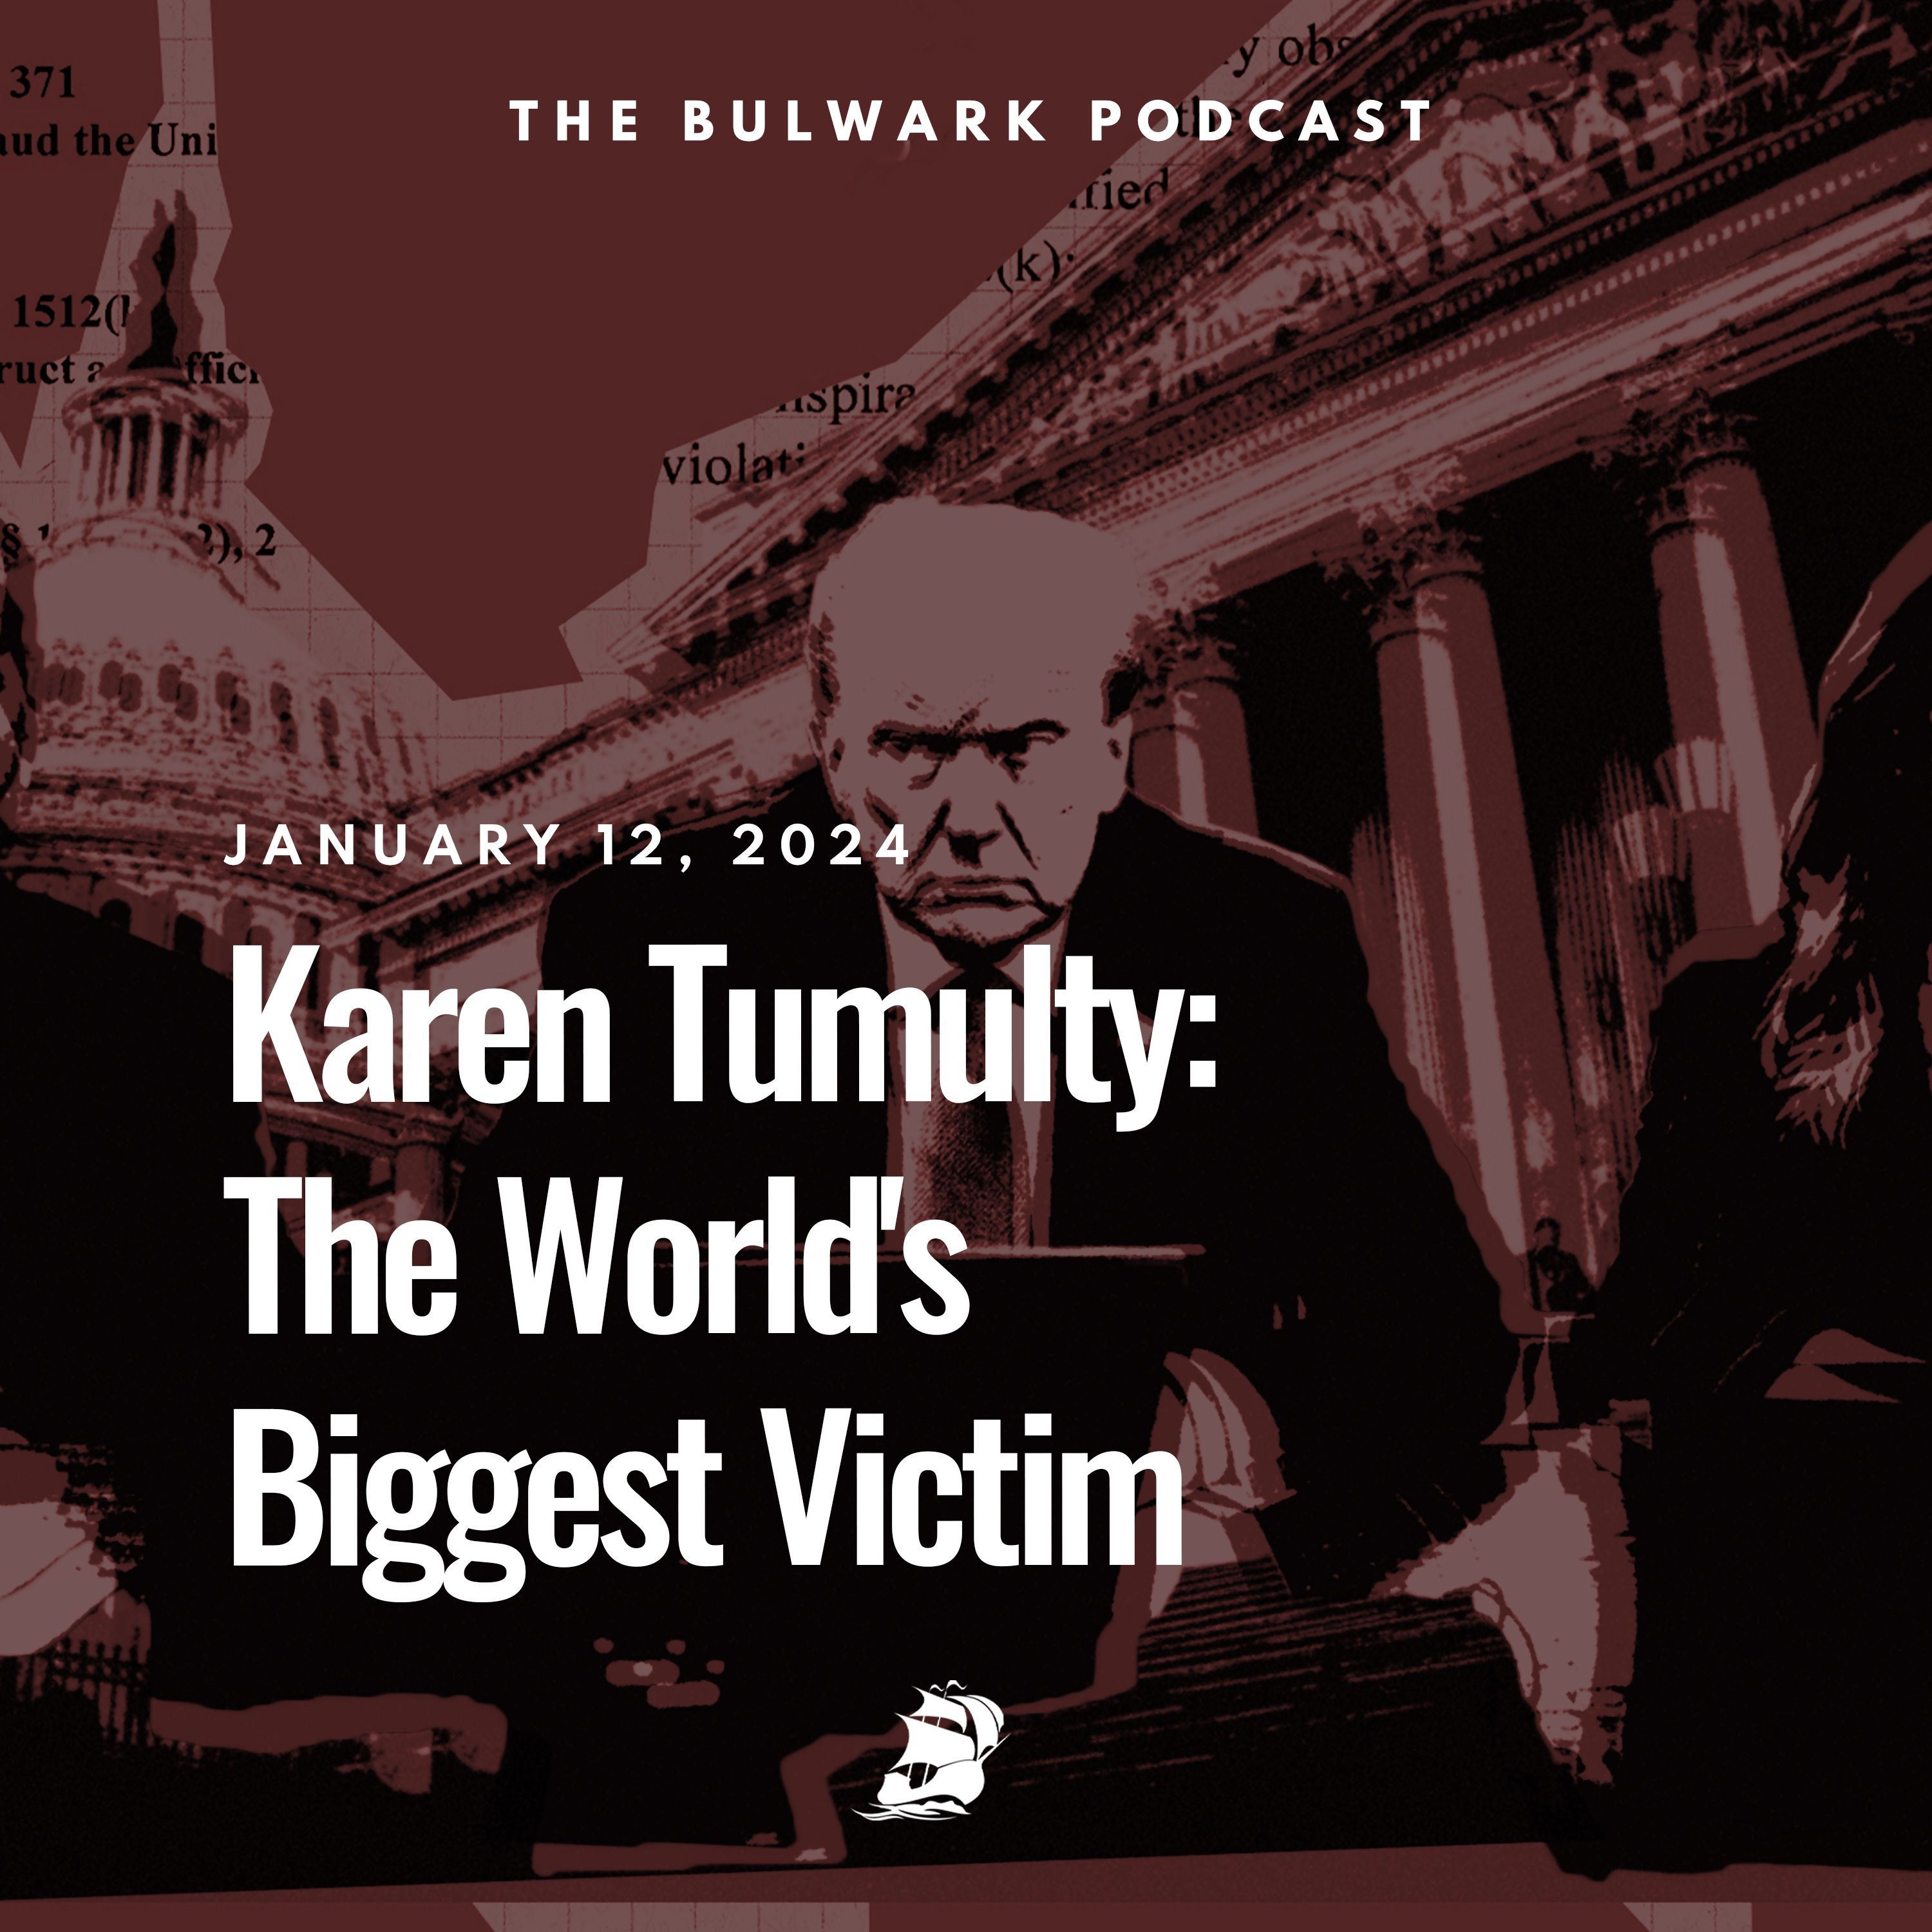 Karen Tumulty: The World's Biggest Victim